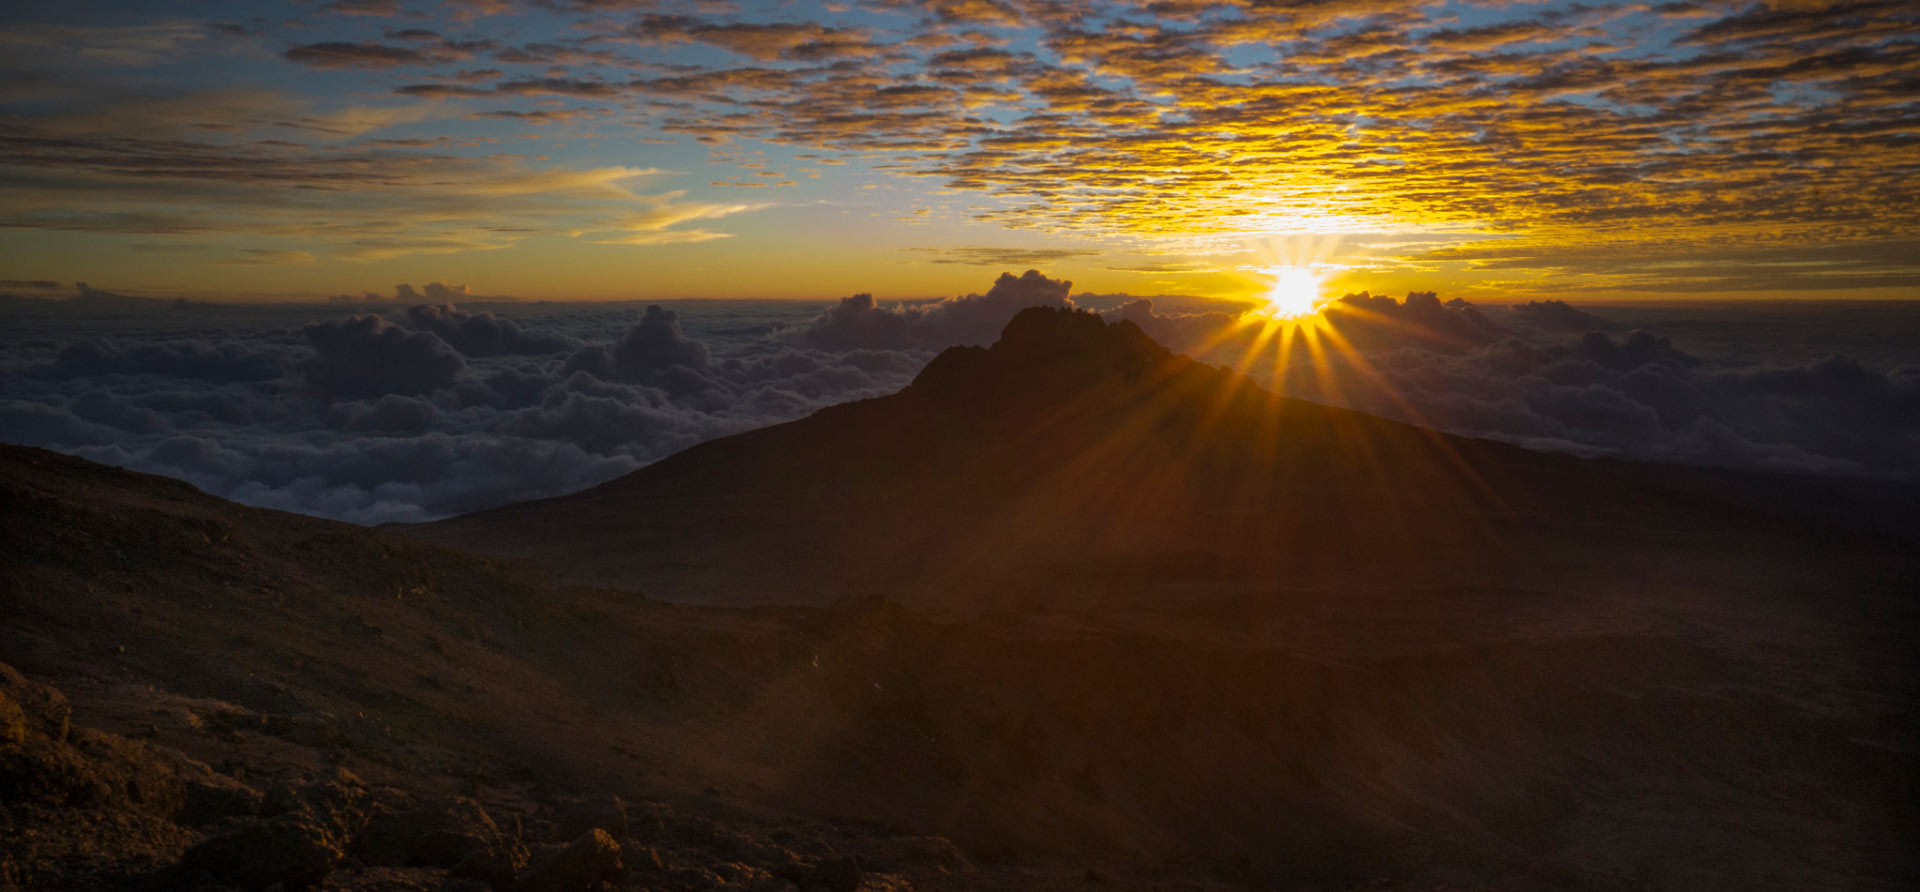 Sunrite on the Peak of Mount Kilimanjaro